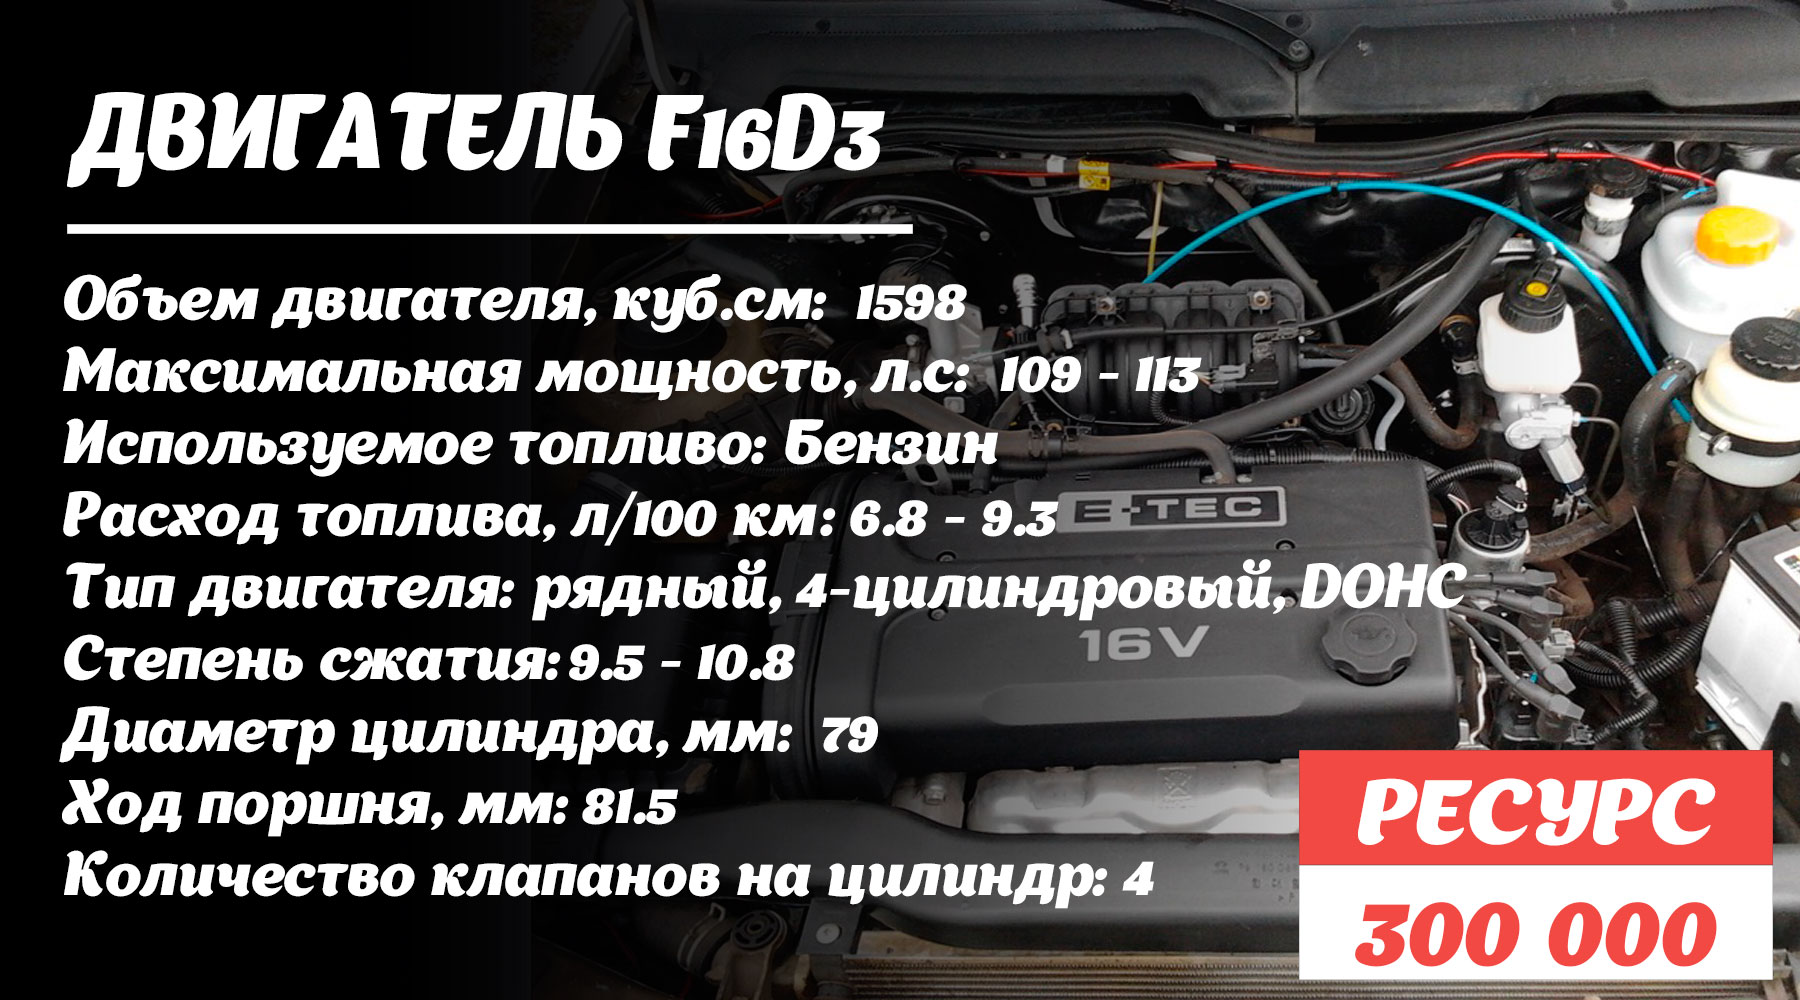 ресурс двигателя F16D3